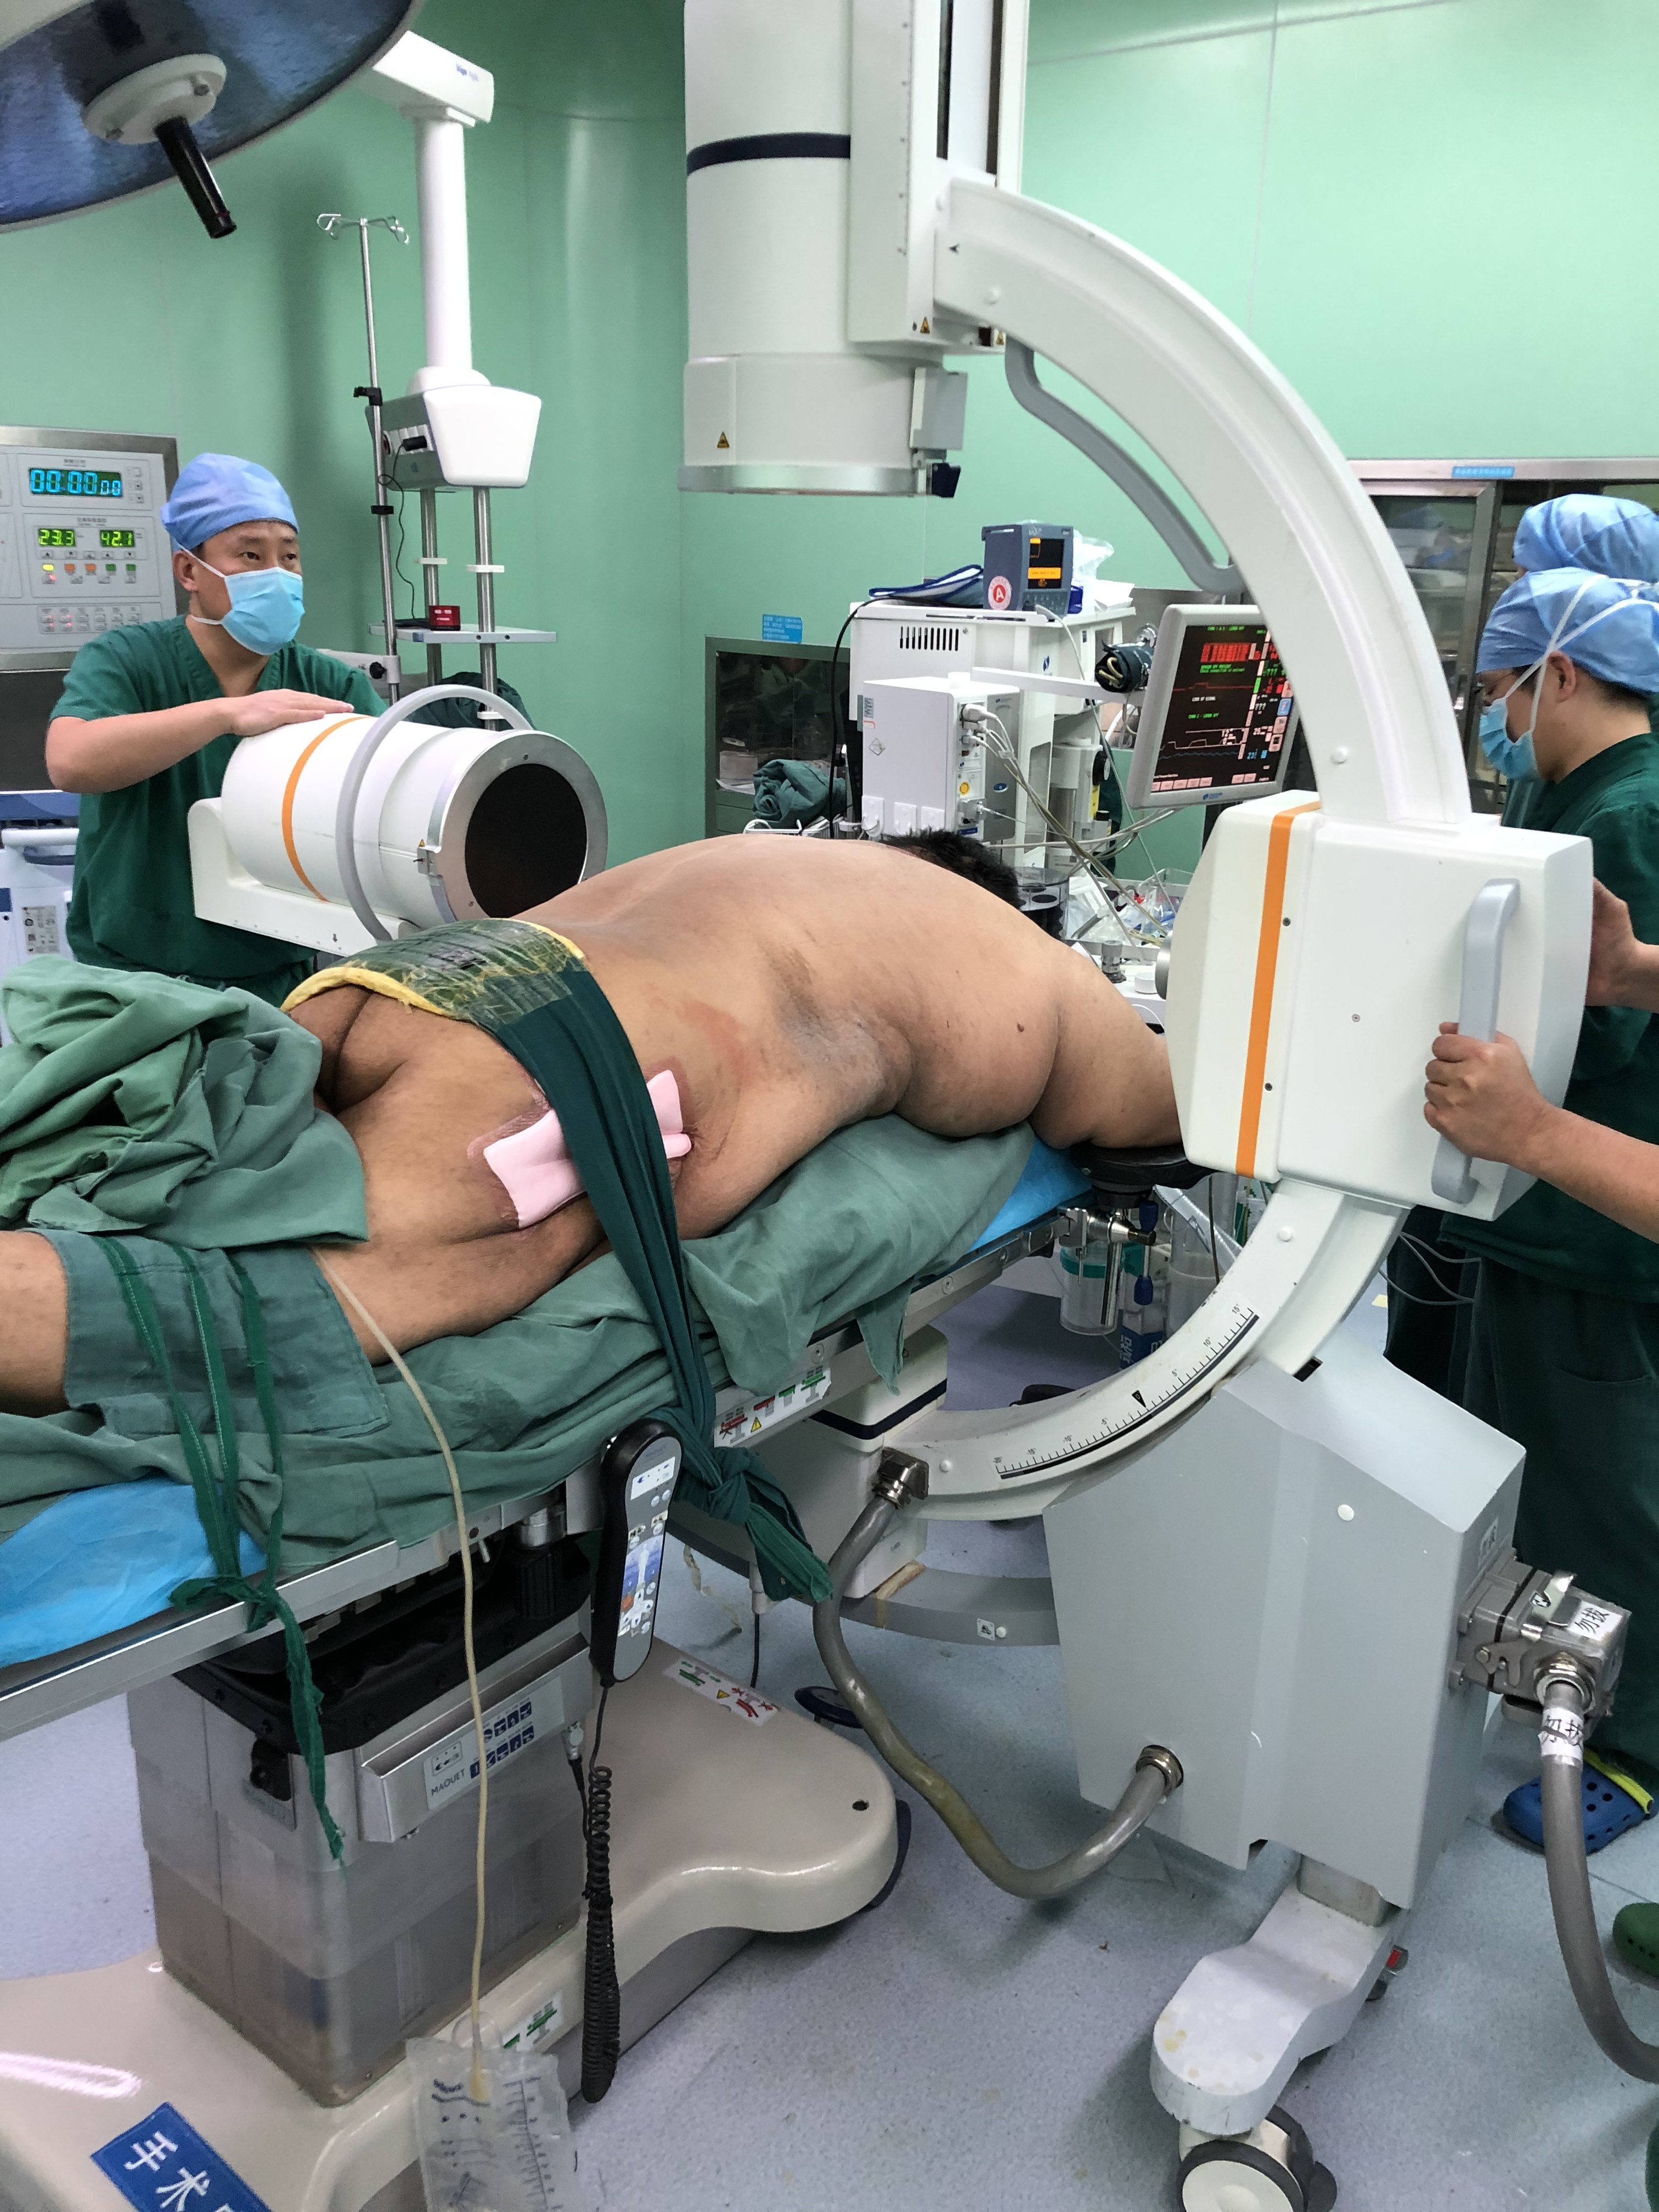 340多斤的胖子胸椎管狭窄手术如何做? (原创)